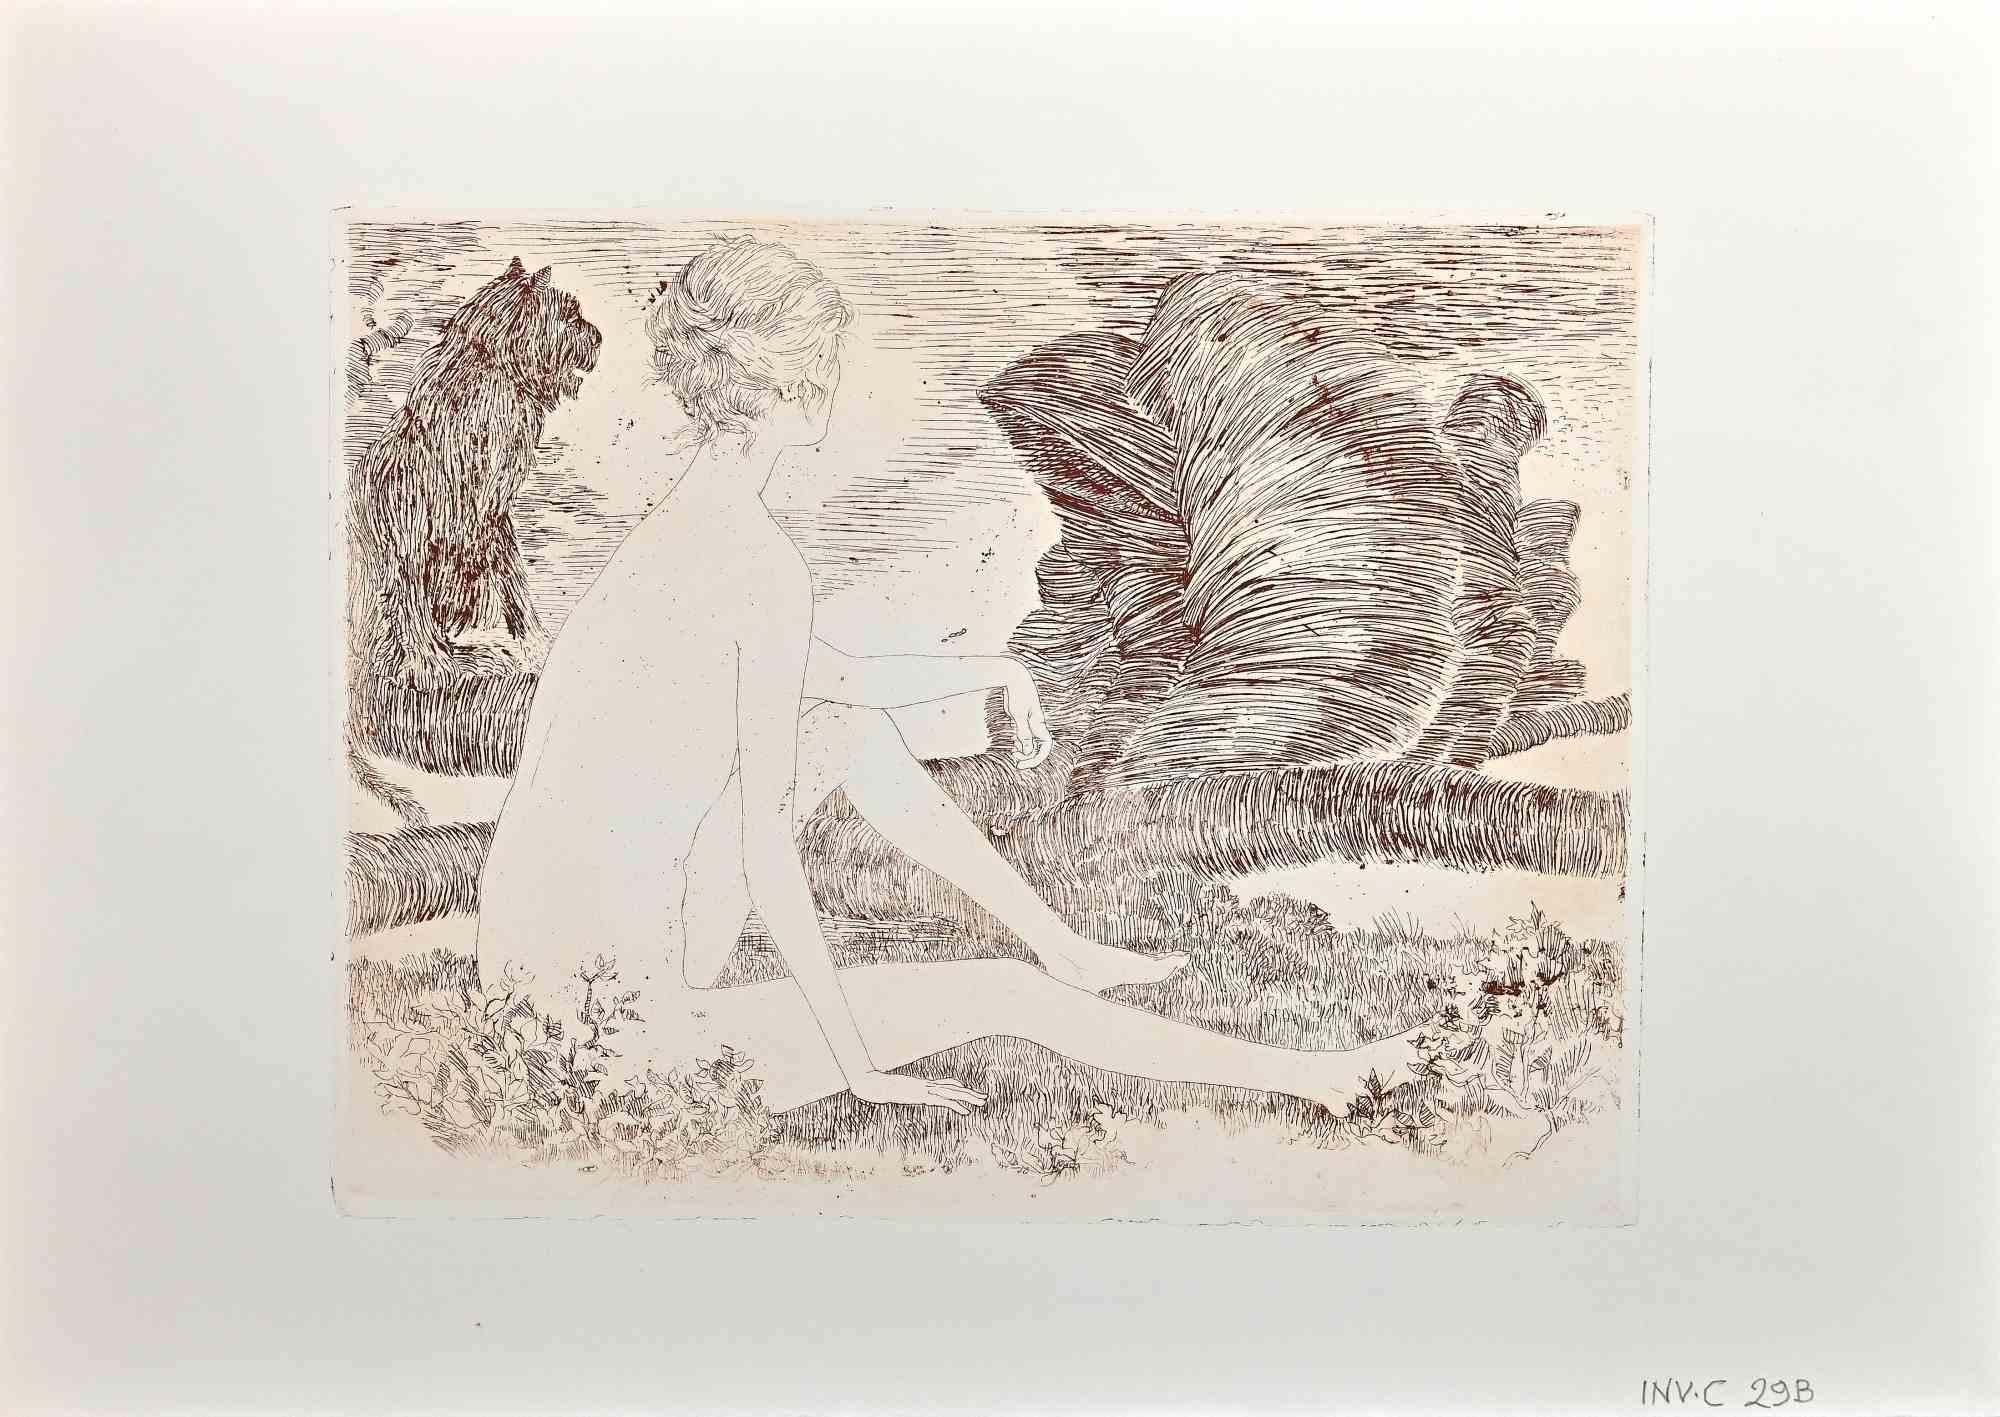 Nude of Woman ist eine Radierung von Leo Guida aus dem Jahr 1971.

Guter Zustand, proof artist.

Keine Unterschrift.

Als Künstler, der ein Gespür für aktuelle Themen, künstlerische Strömungen und historische Techniken hat, konnte Leo Guida während